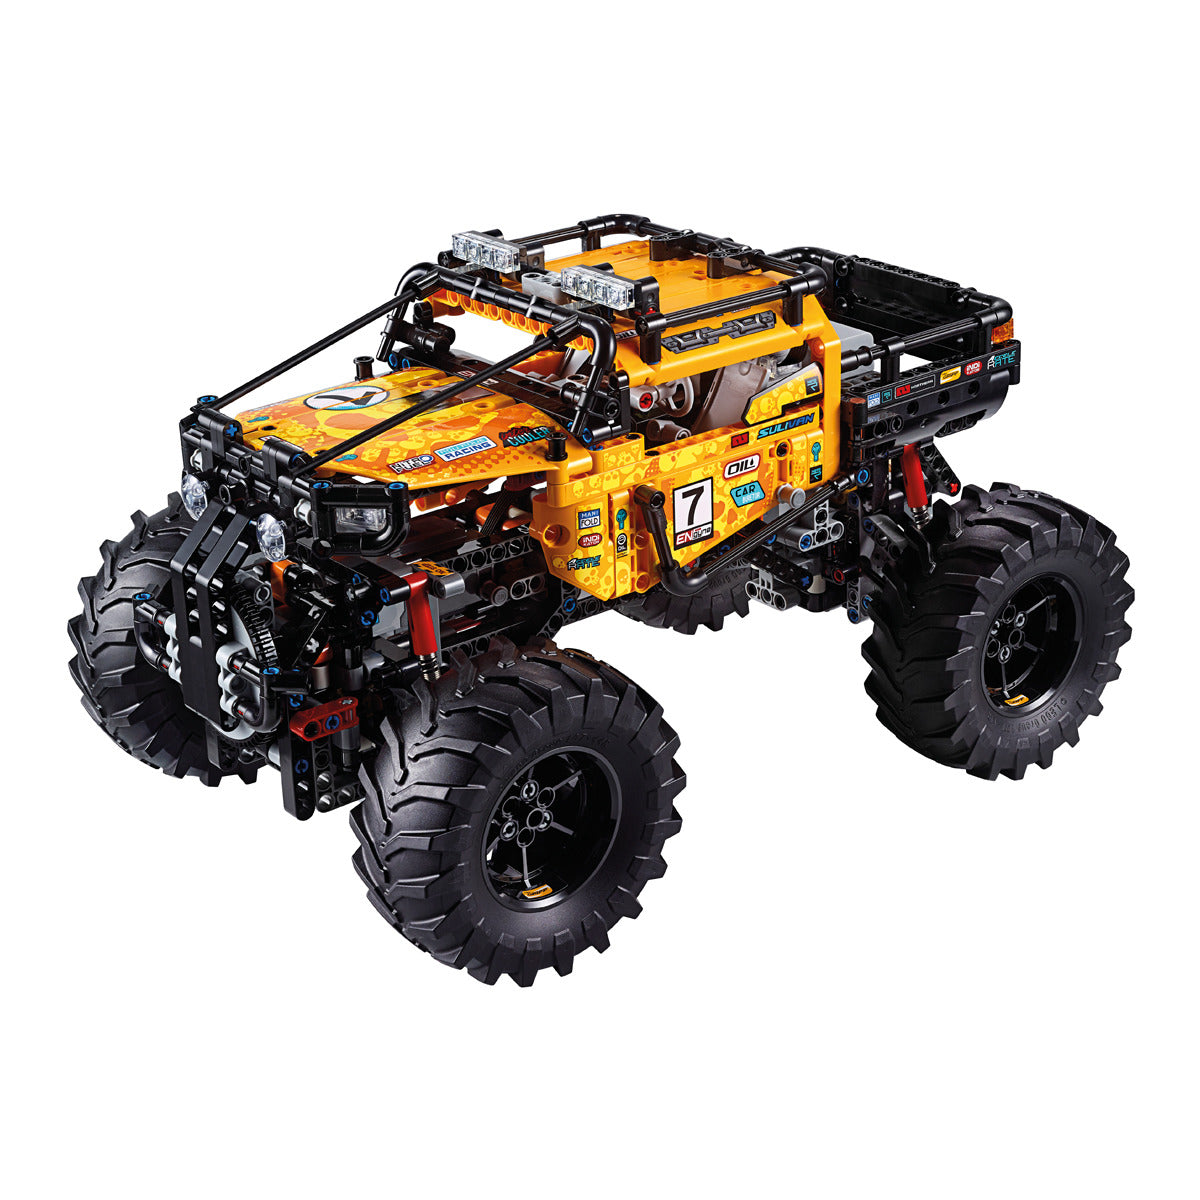 LEGO Technic 42099 Todo-o-Terreno 4x4 X-treme